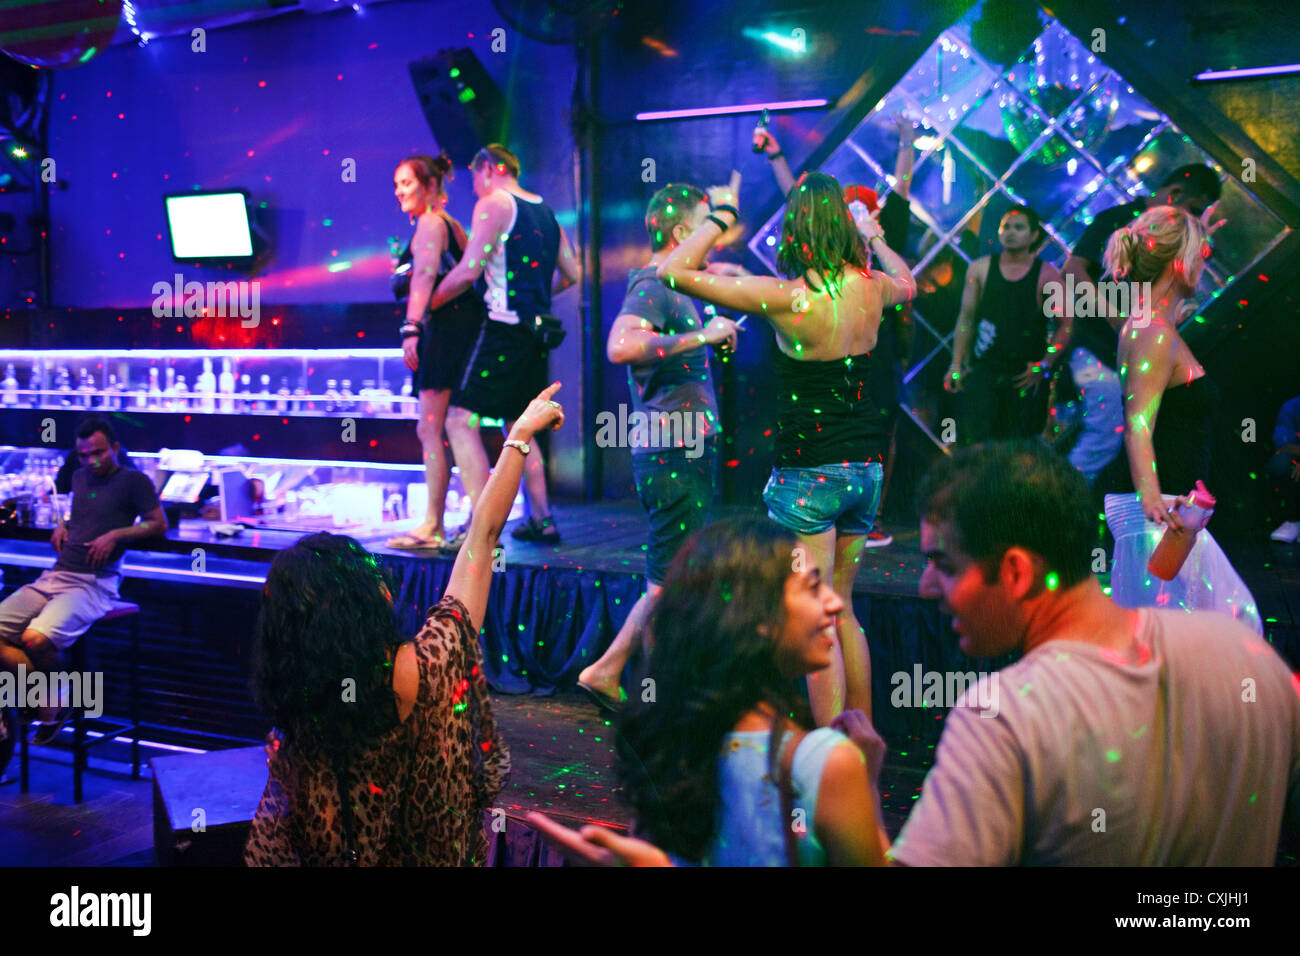 Tarde en la noche, fiesta en un club nocturno en Kuta - Bali, Indonesia frecuentadas por turistas extranjeros. Foto de stock